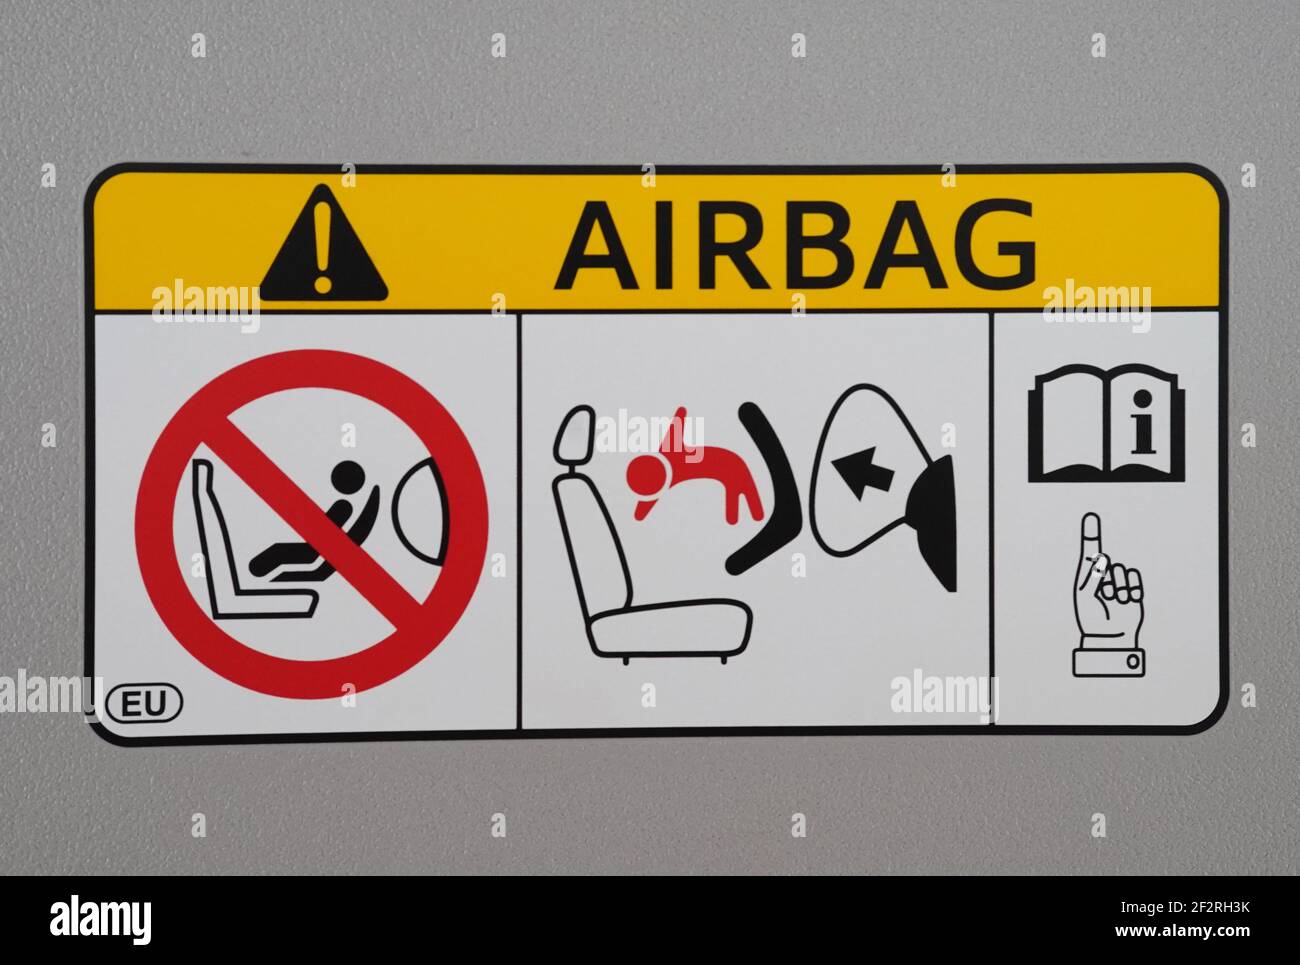 https://c8.alamy.com/compde/2f2rh3k/airbag-aufkleber-etikett-warnung-anweisung-symbol-im-auto-2f2rh3k.jpg